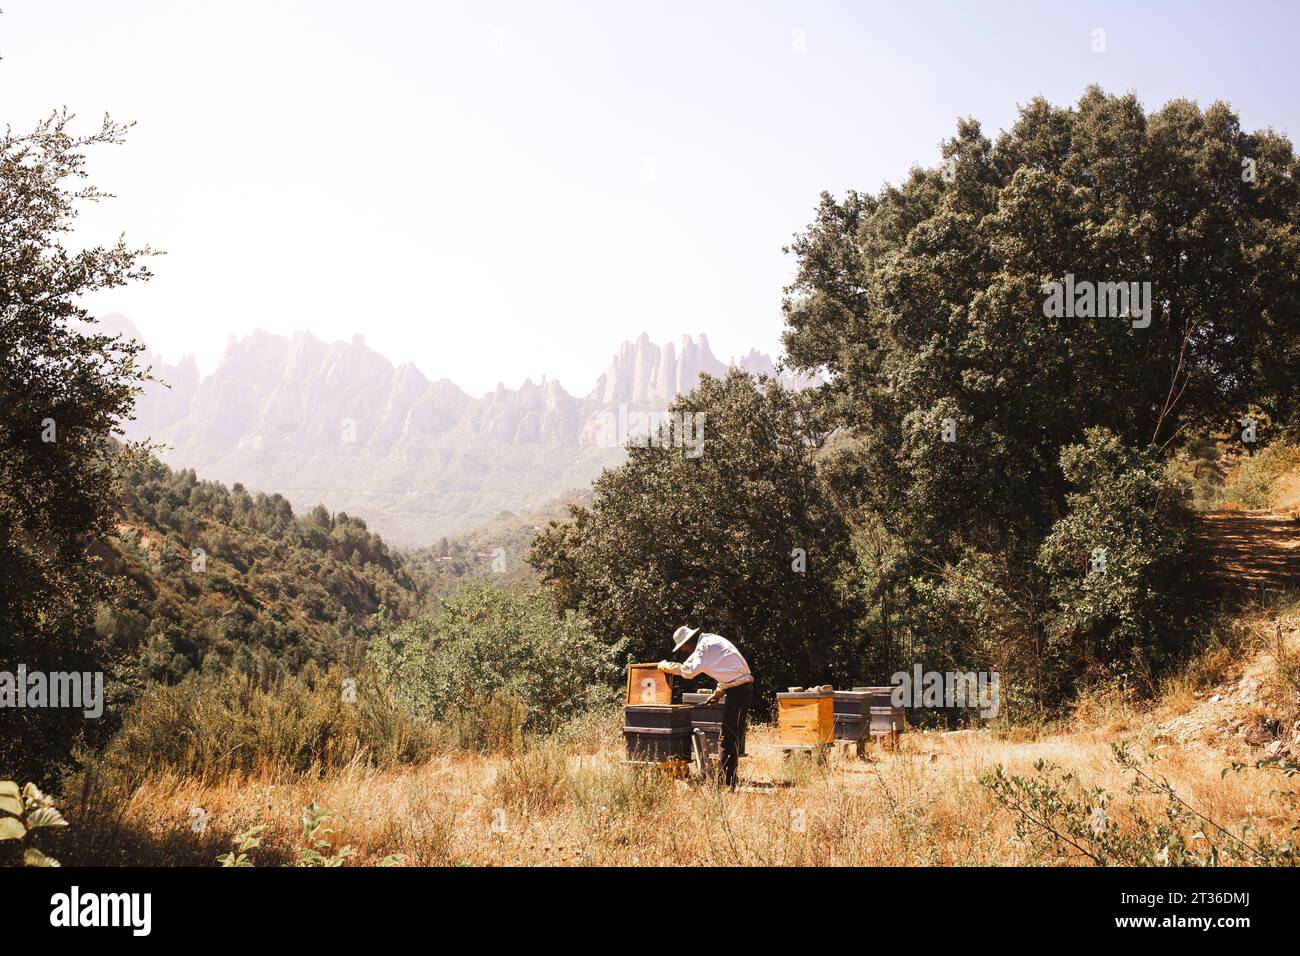 Imker arbeitet mit Bienenstock in der Nähe von Bäumen Stockfoto